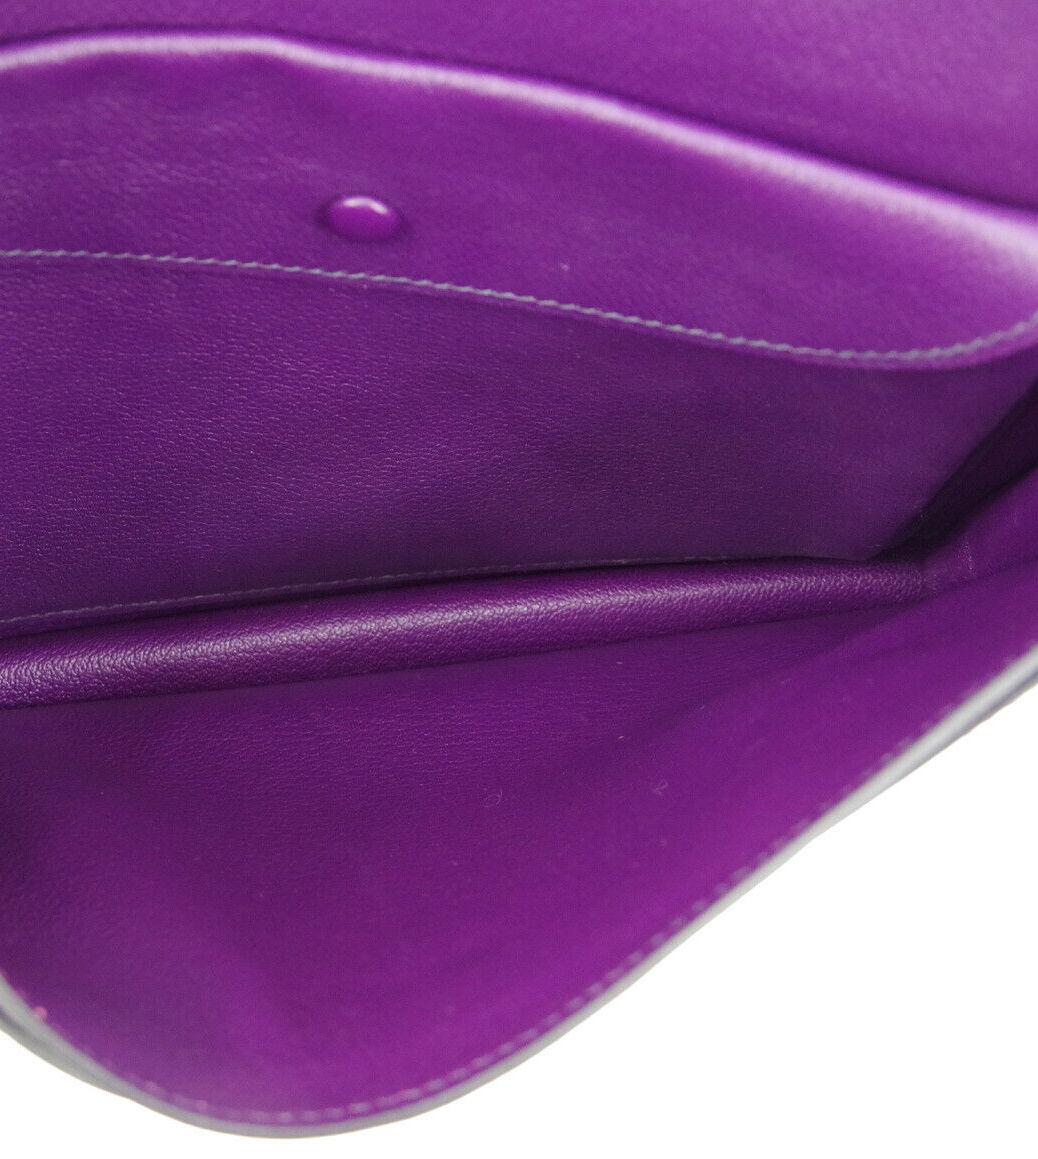 Women's Hermes Purple Cognac Leather  2 in 1 Evening Clutch Shoulder Bag in Box